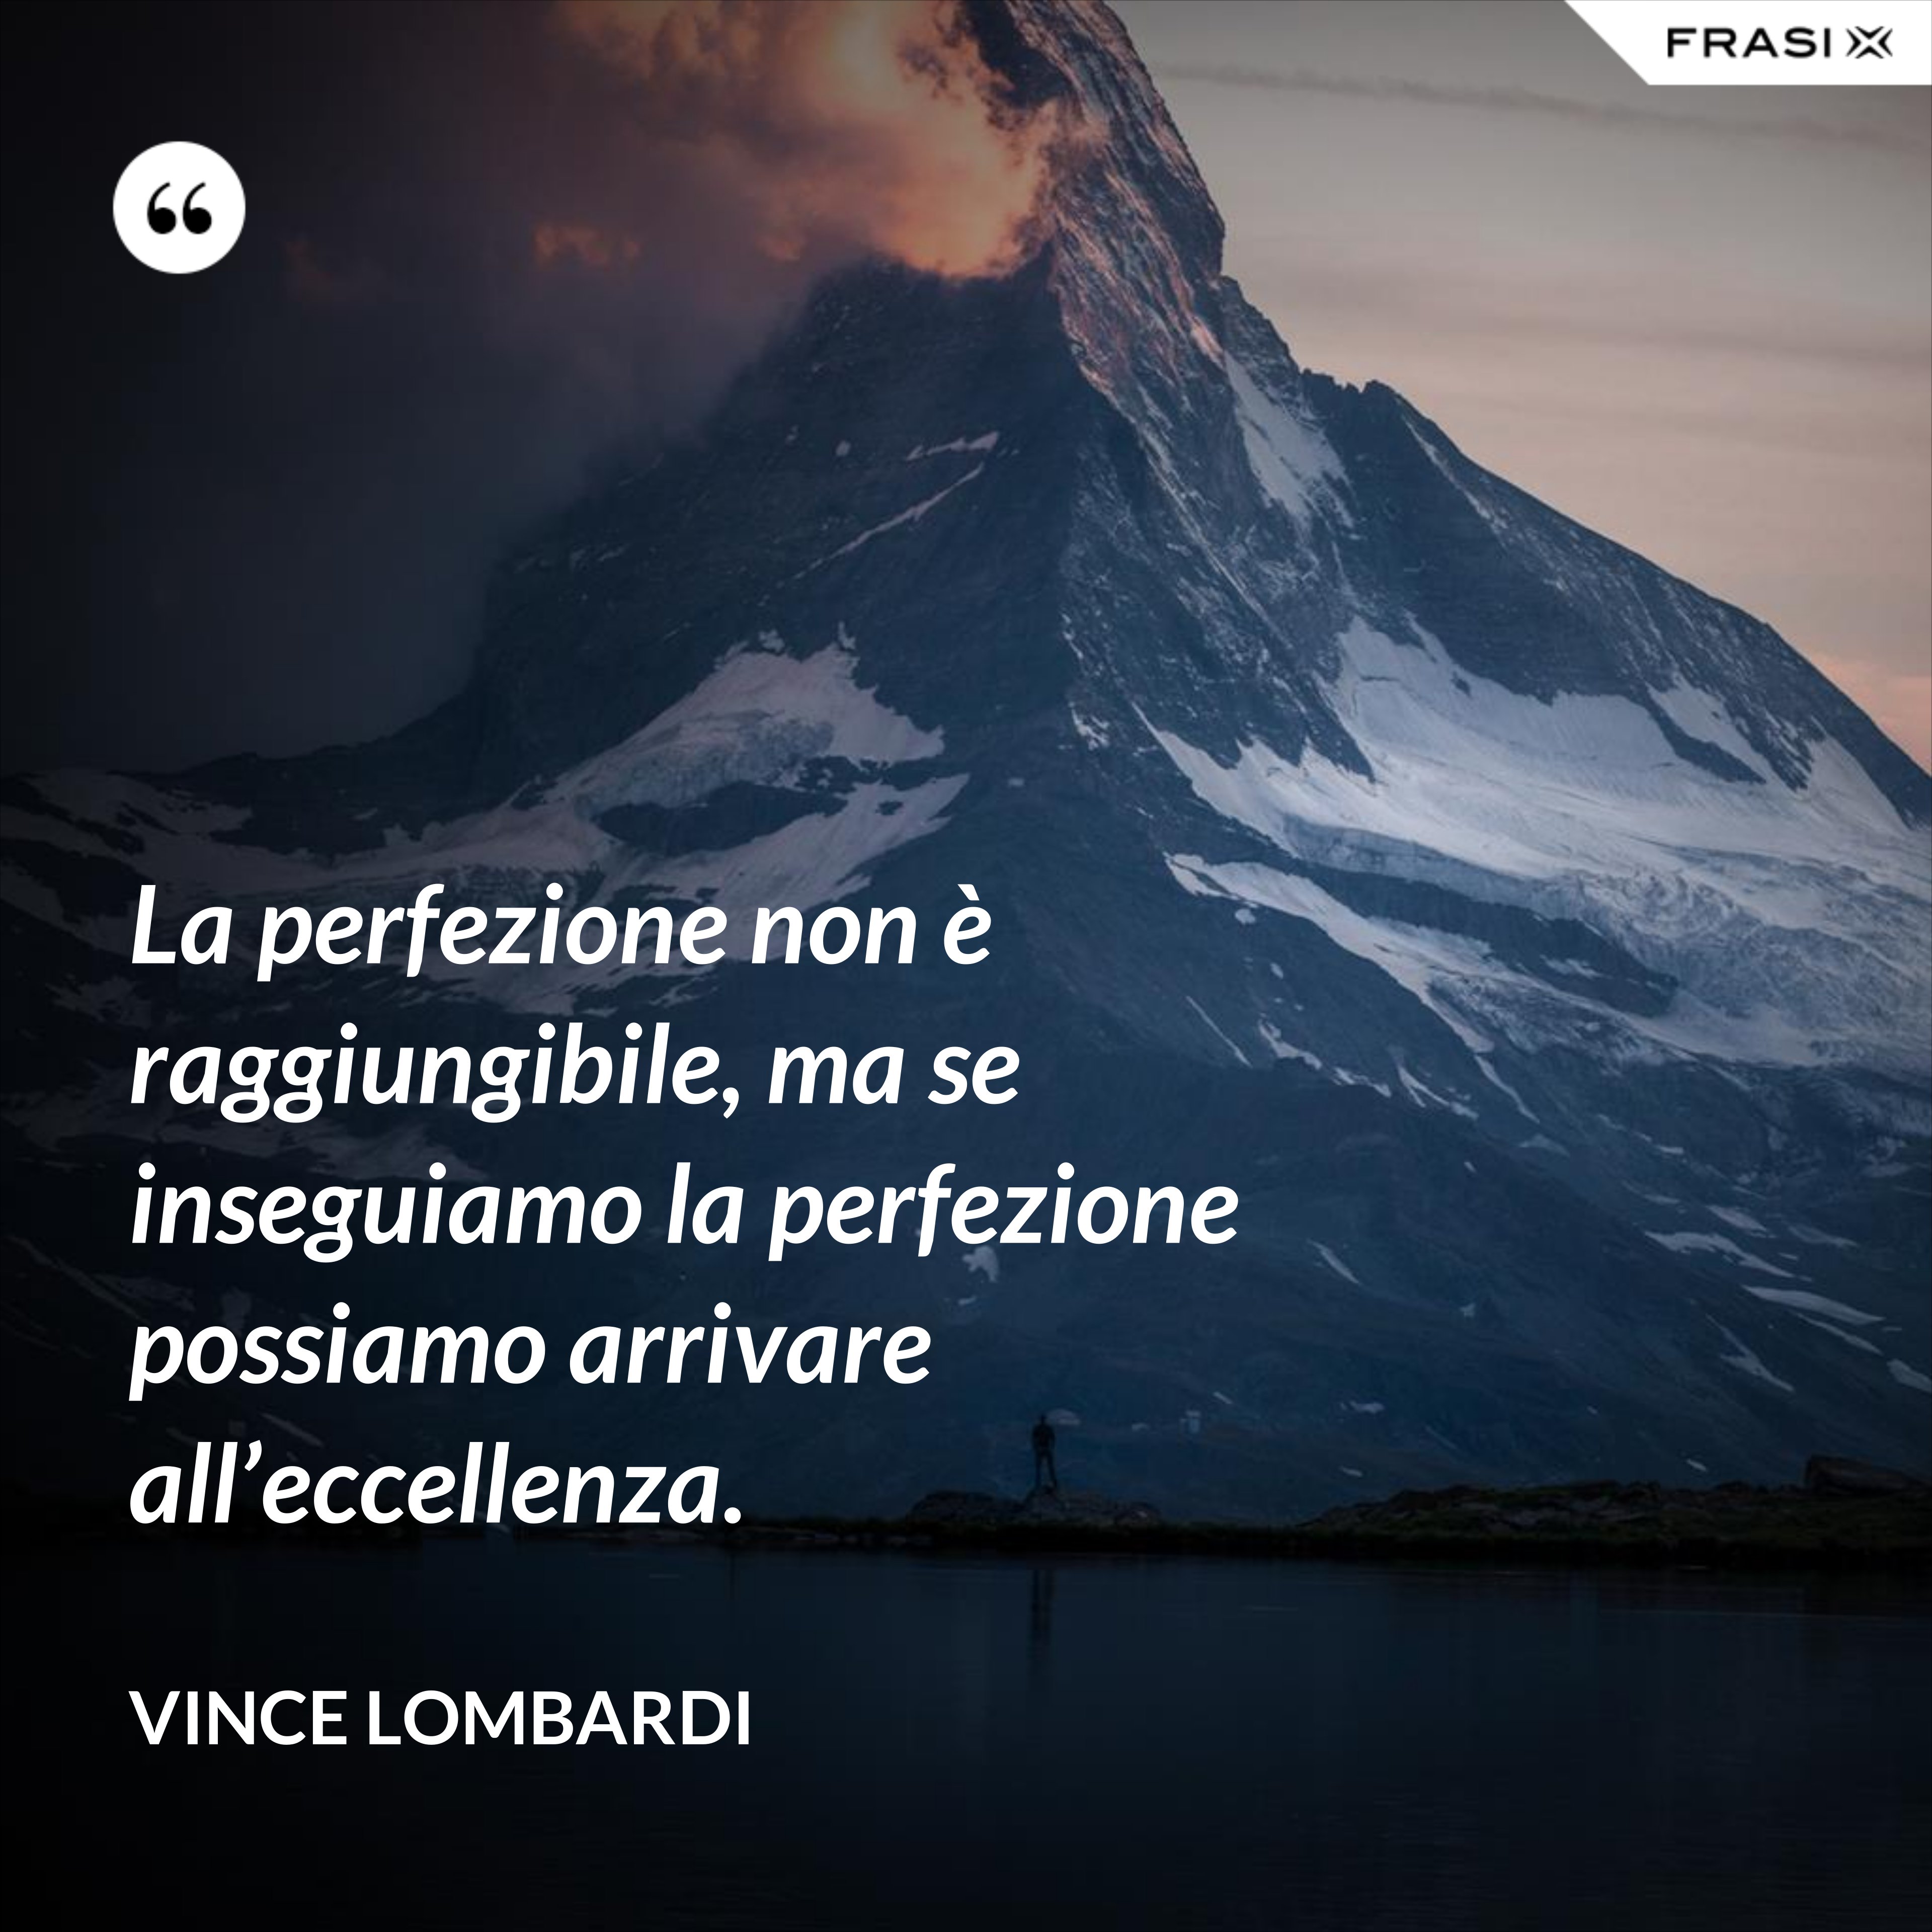 La perfezione non è raggiungibile, ma se inseguiamo la perfezione possiamo arrivare all’eccellenza. - Vince Lombardi